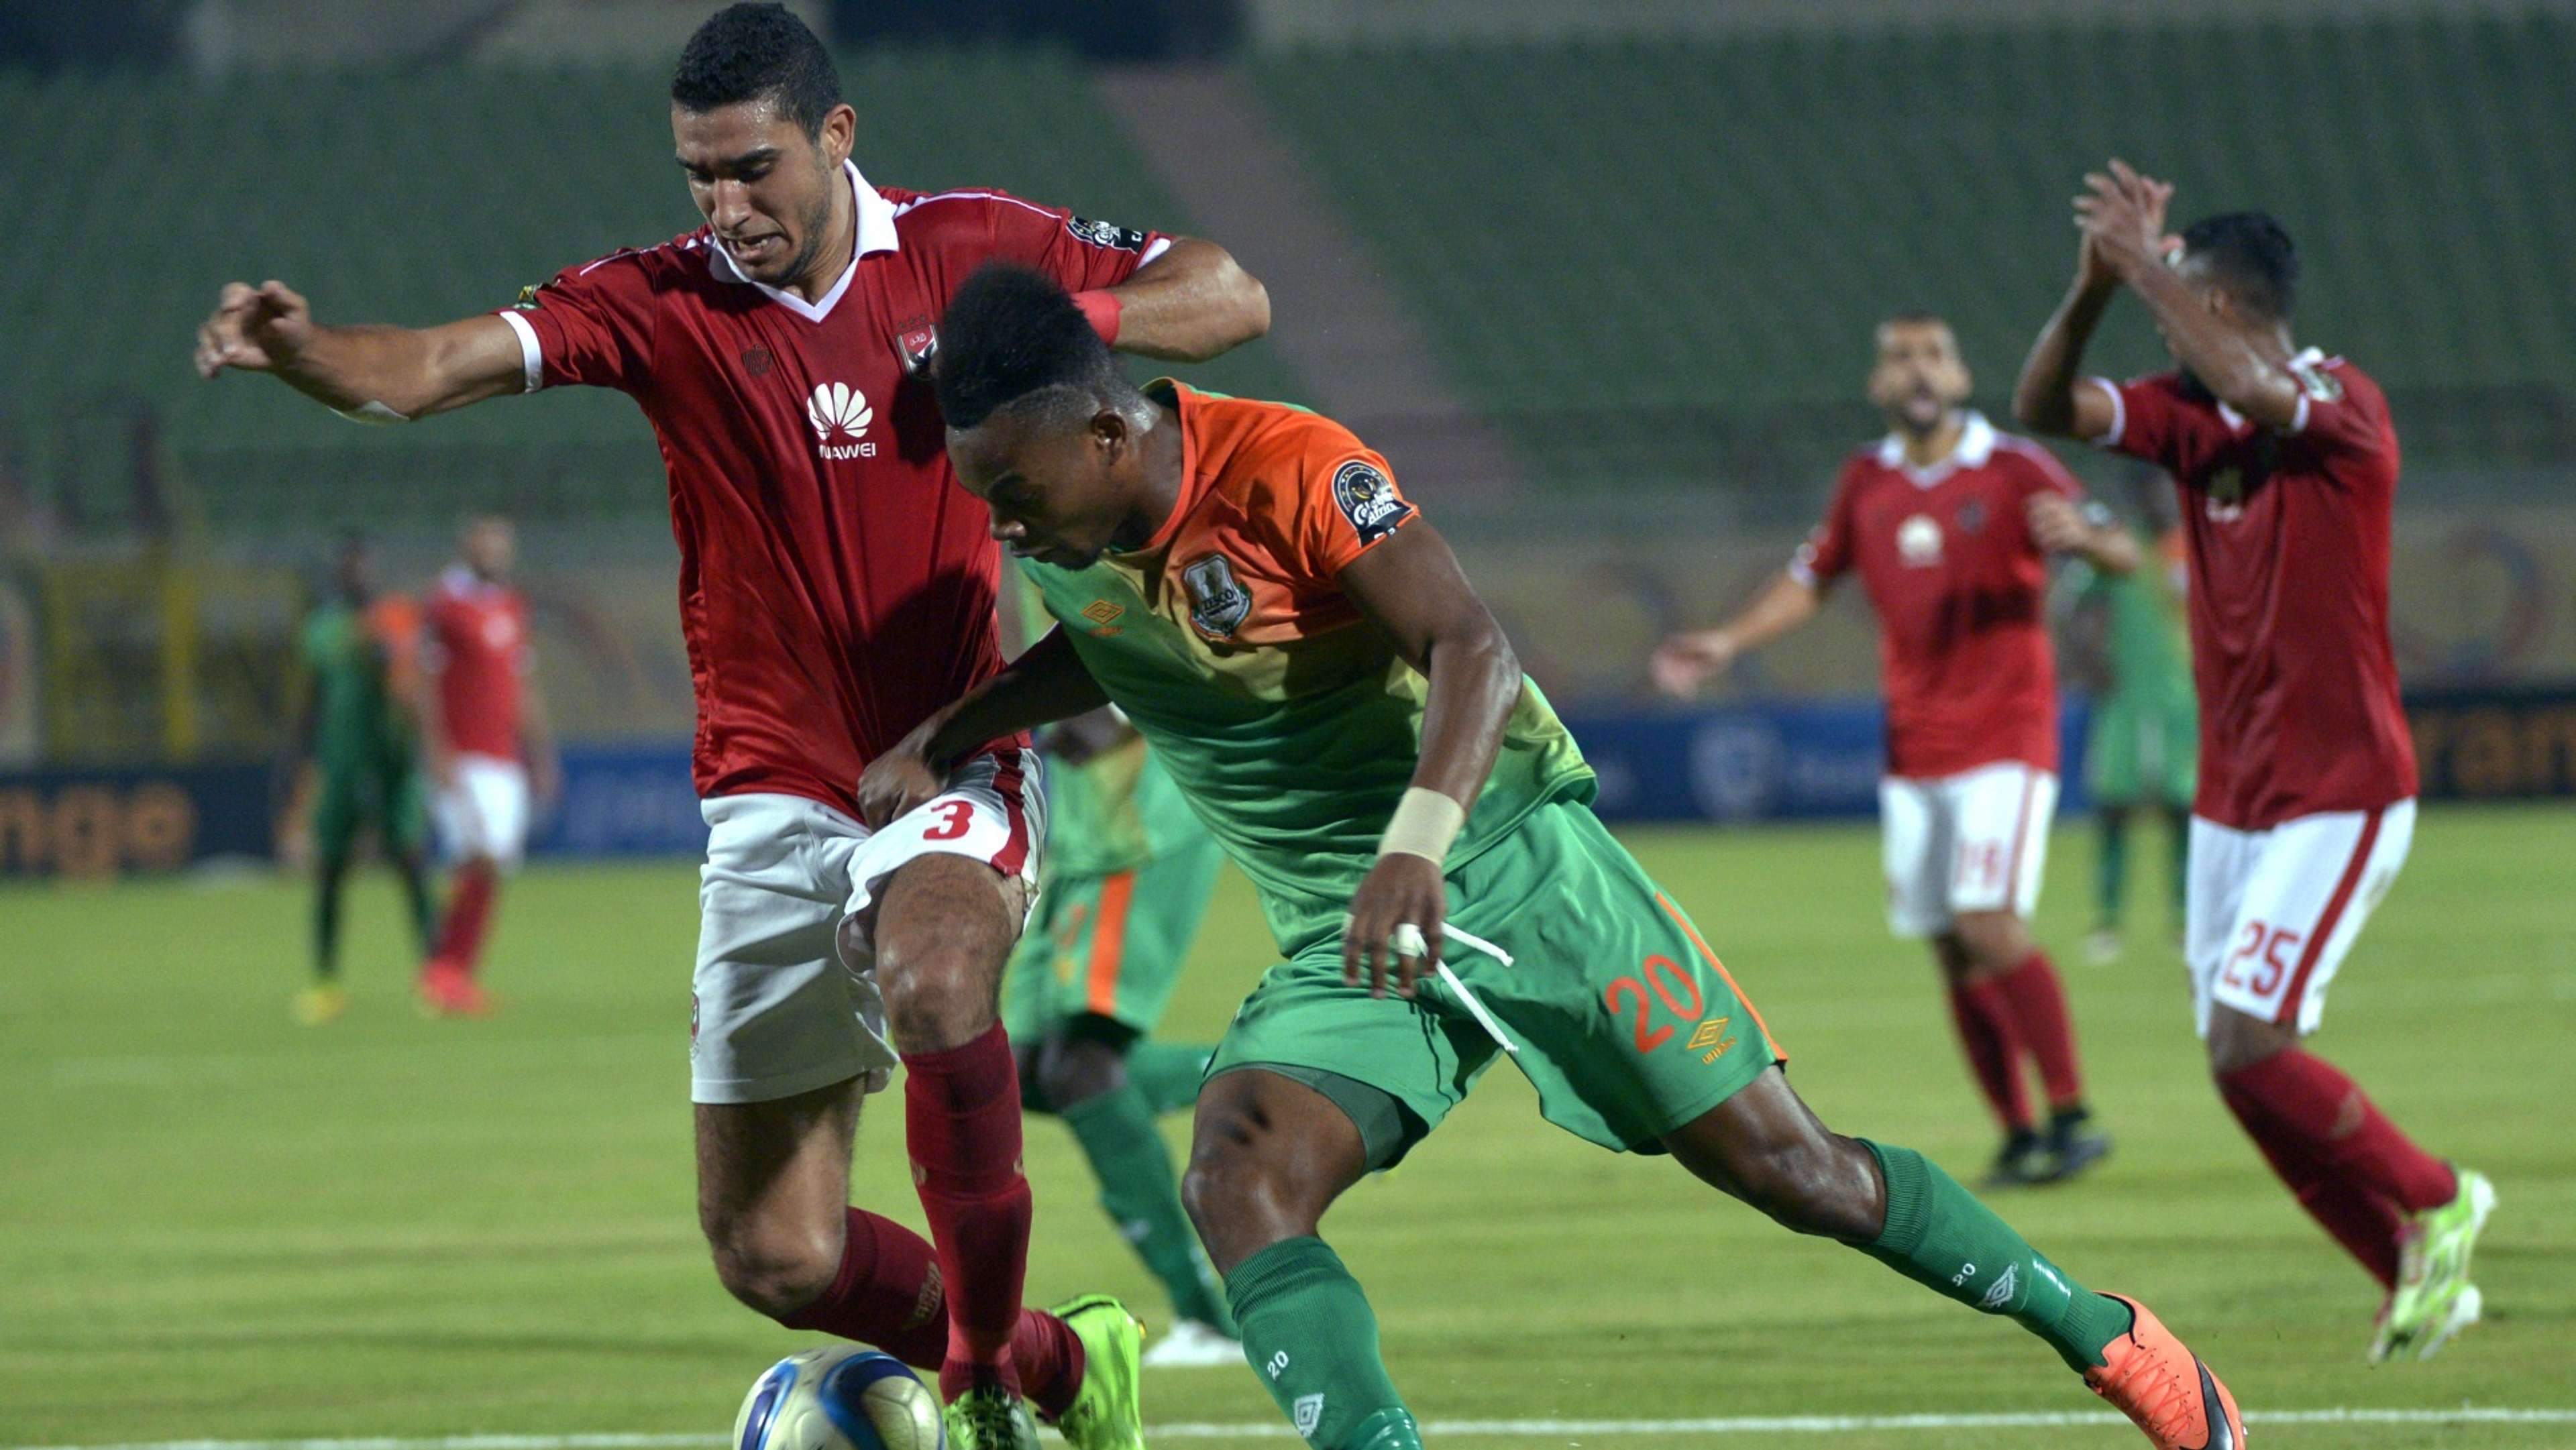 Ramy Rabia of Al-Ahly and Zesco United's Idris Ilunga Mbombo